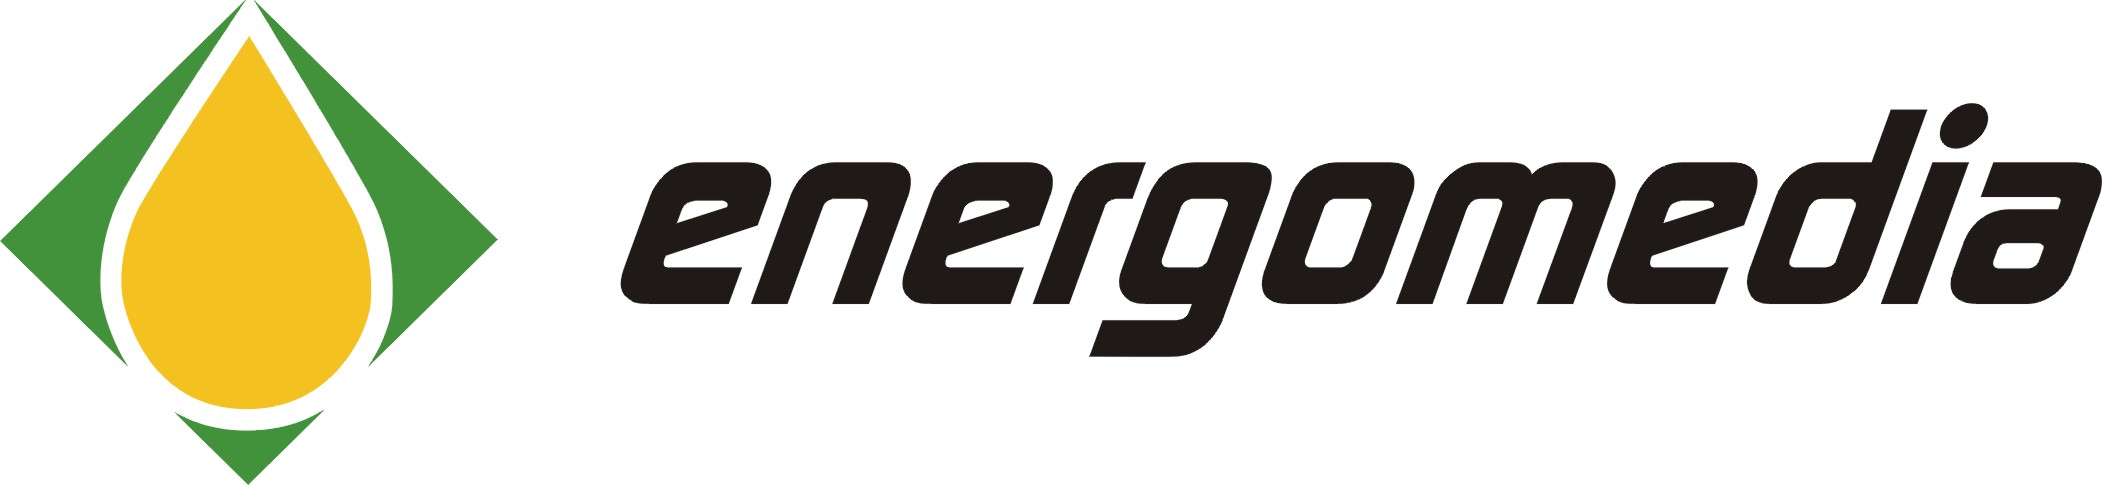 Energomedia logo poziom